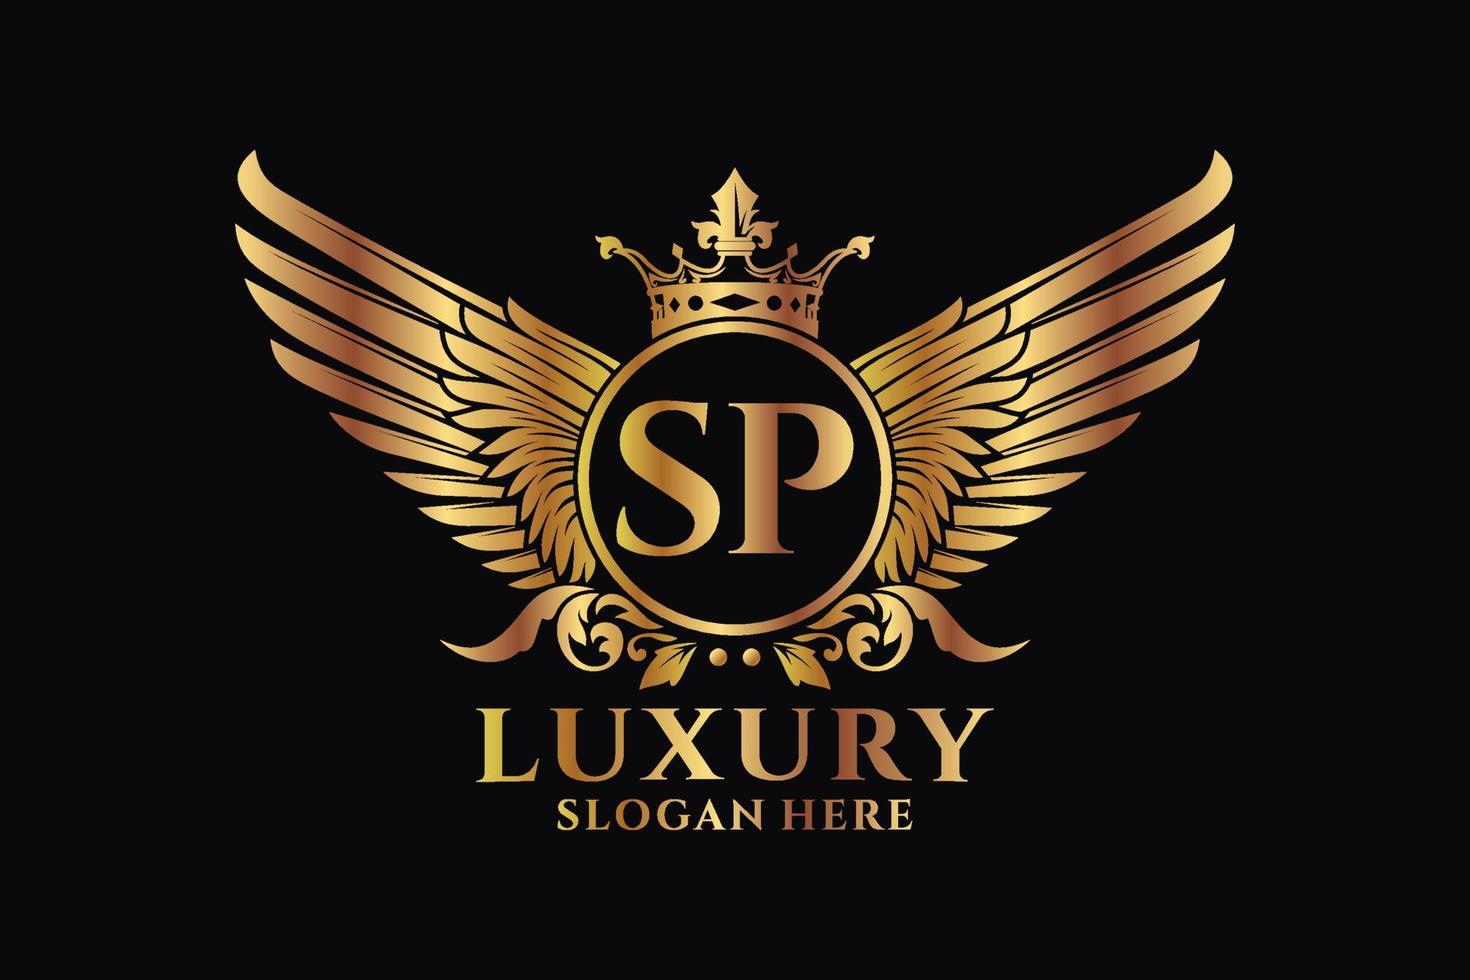 lettre d'aile royale de luxe sp crest logo couleur or vecteur, logo de victoire, logo de crête, logo d'aile, modèle de logo vectoriel. vecteur